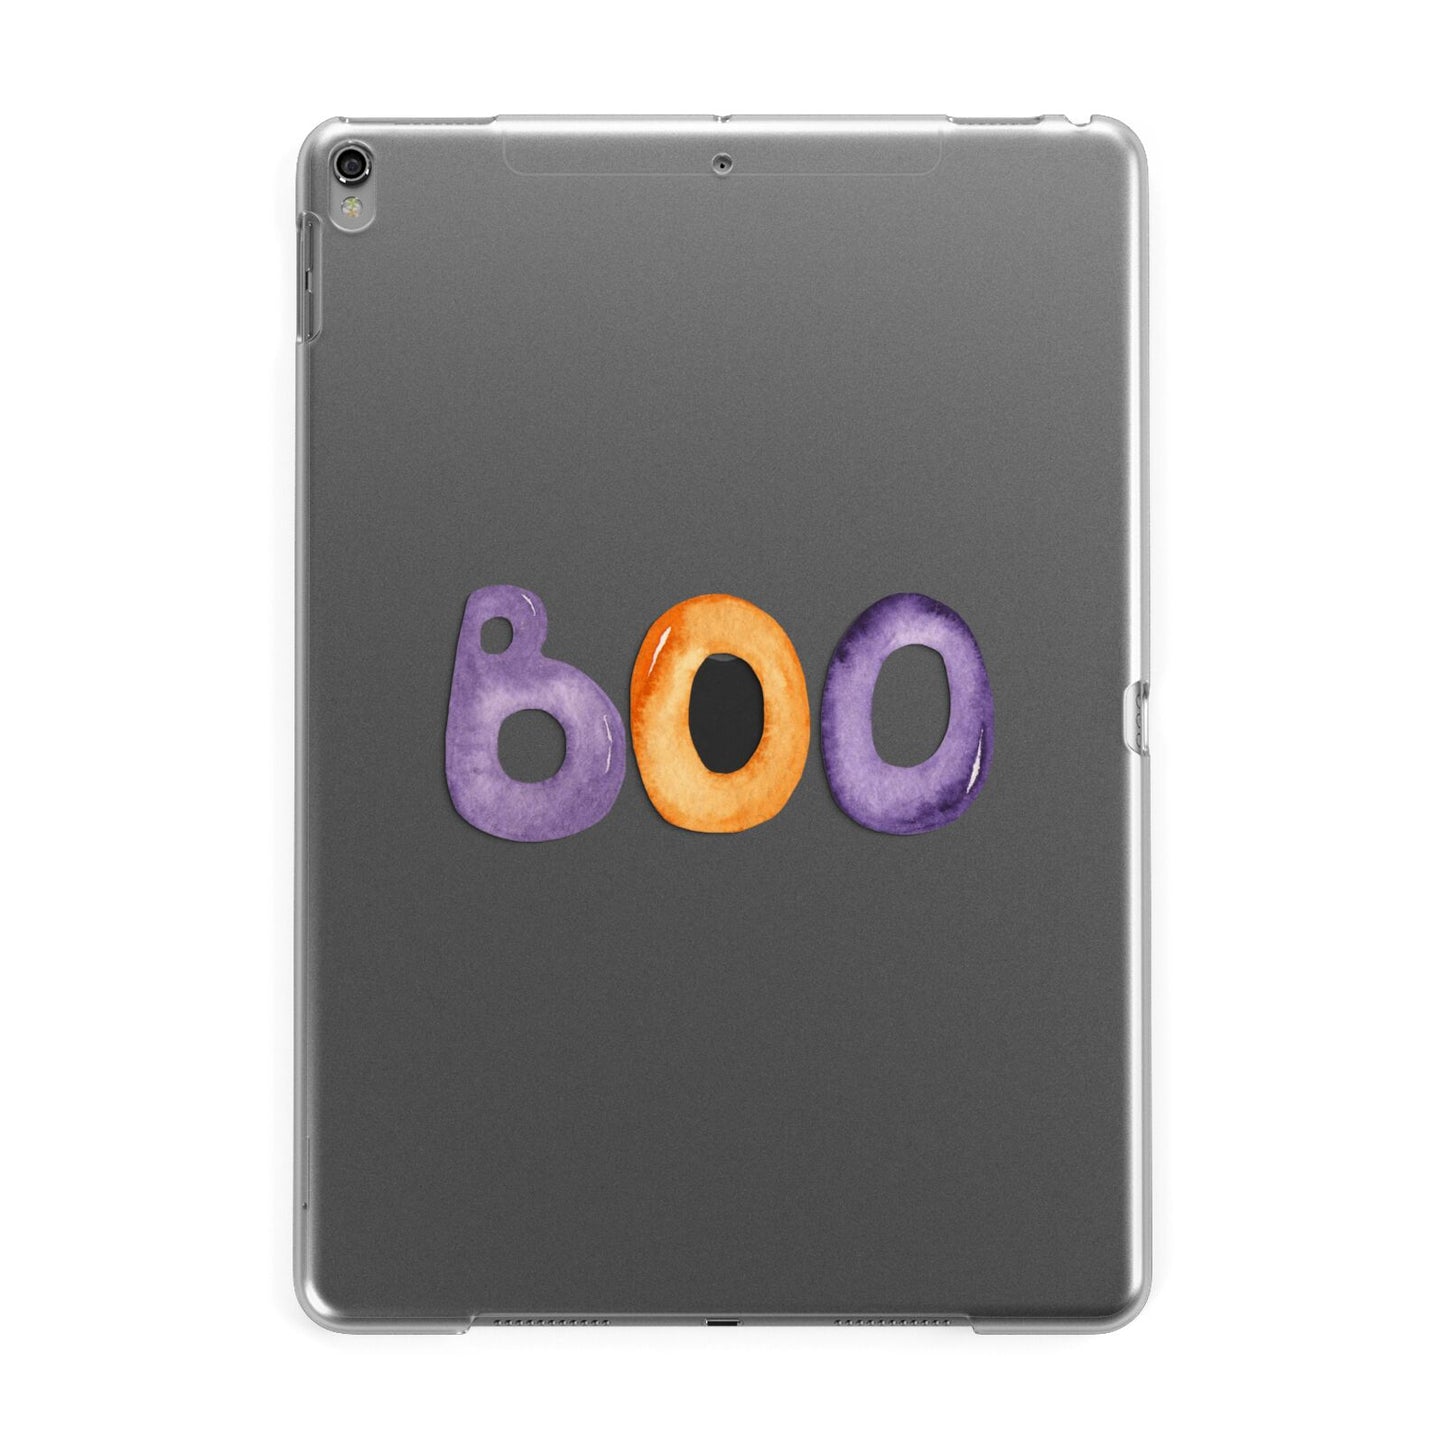 Boo Apple iPad Grey Case